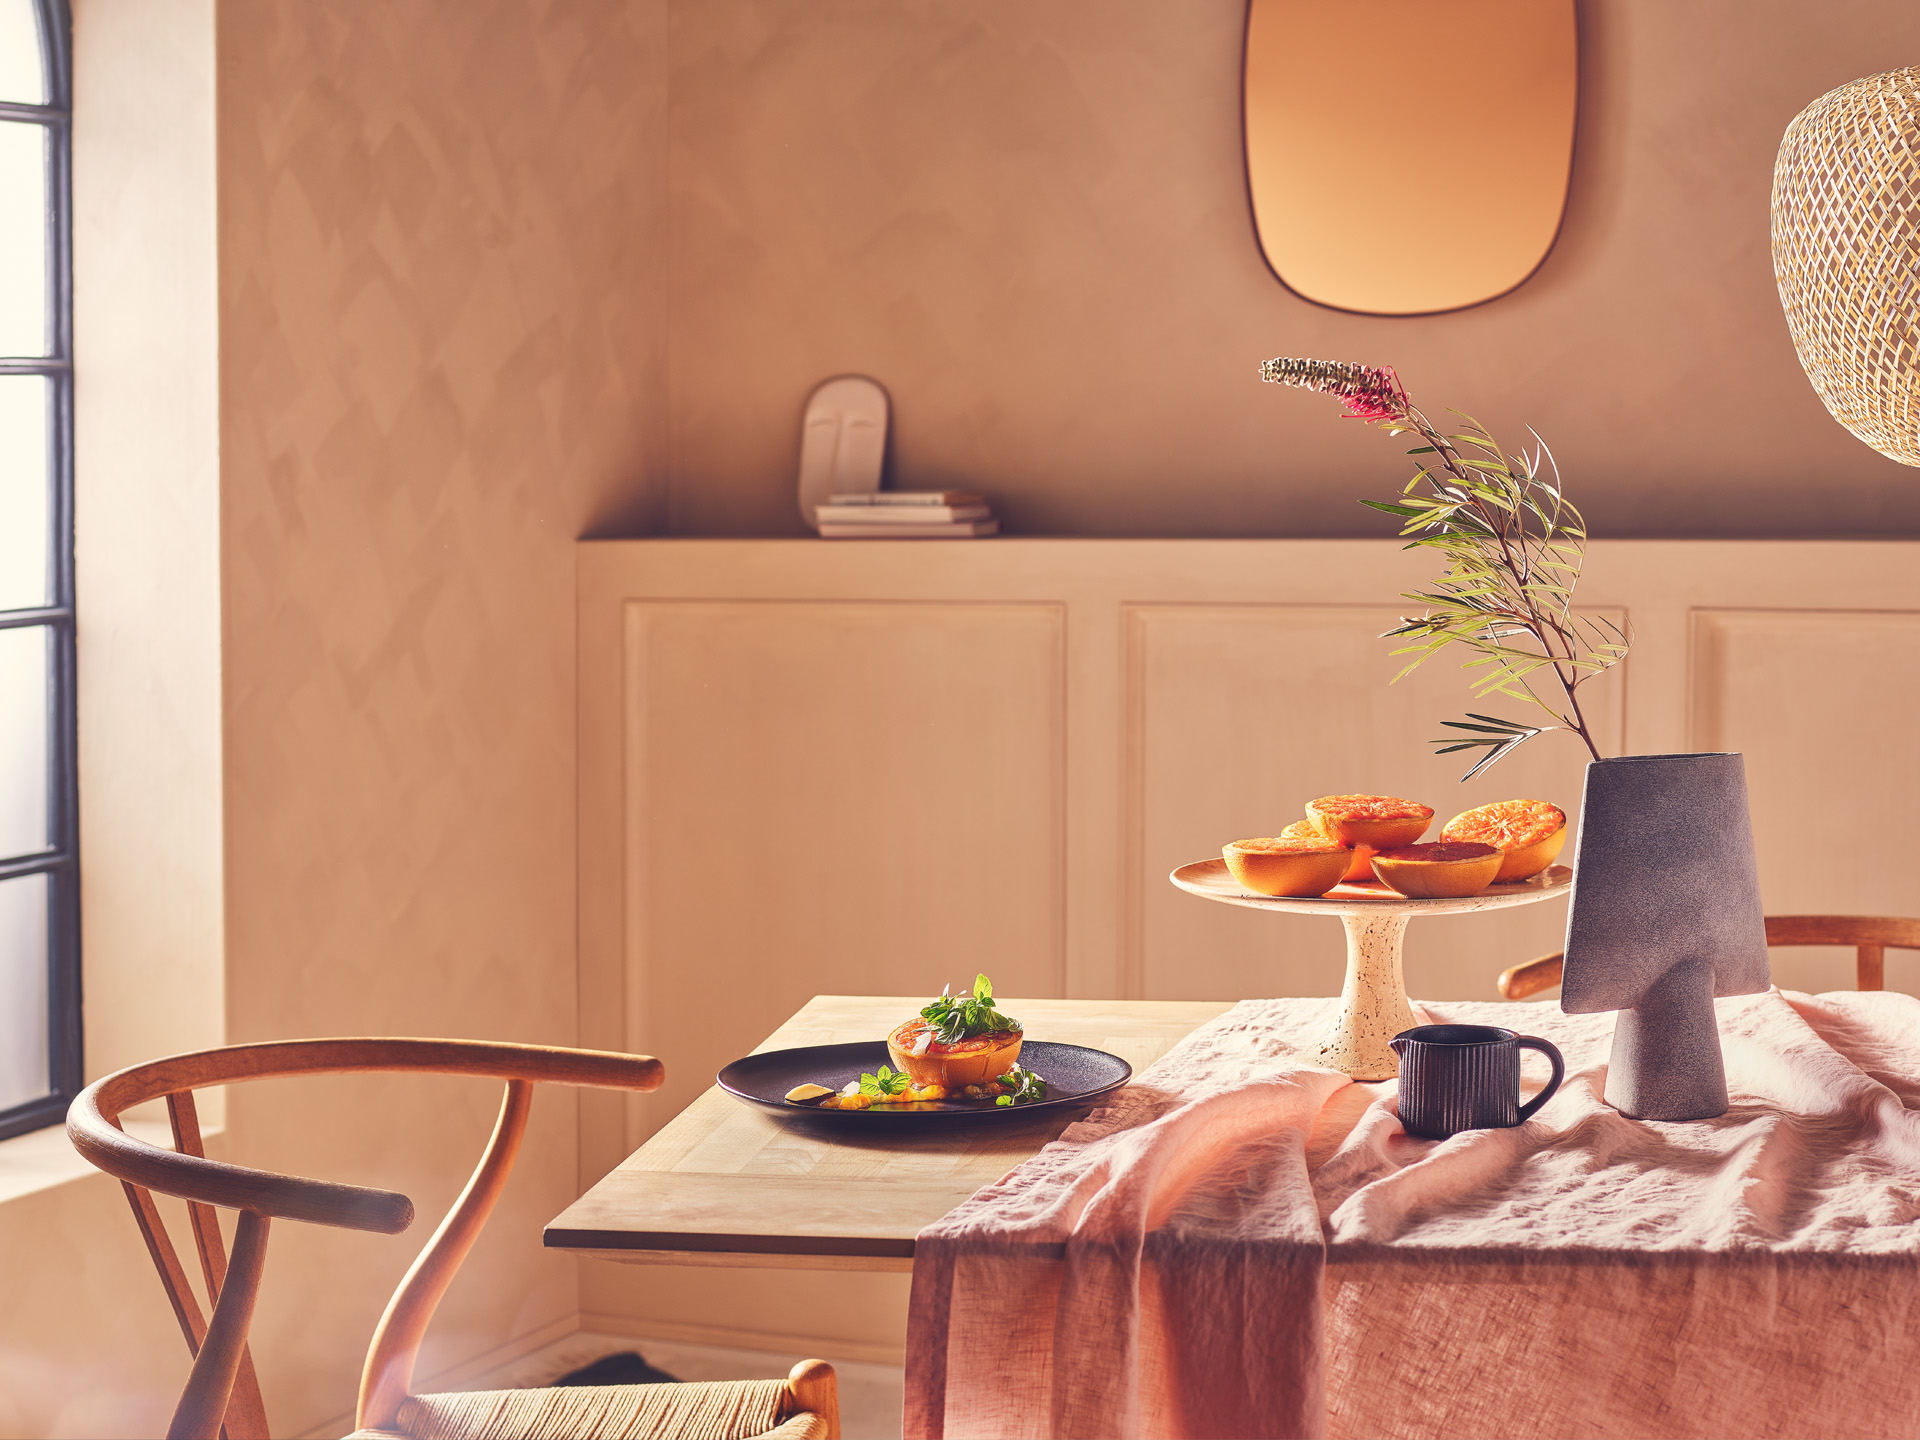 Fotostrecke mit Foodfokus: Karamellisierte Orange auf modern gestylten Tisch vor Fenster und Kommode mit freundlichem weichen Licht in räumlicher Atmosphäre und Tiefe - Konzeption, Artdirektion, Setbau und Werbefotografie durch das Studio Hackenberg in Kiel